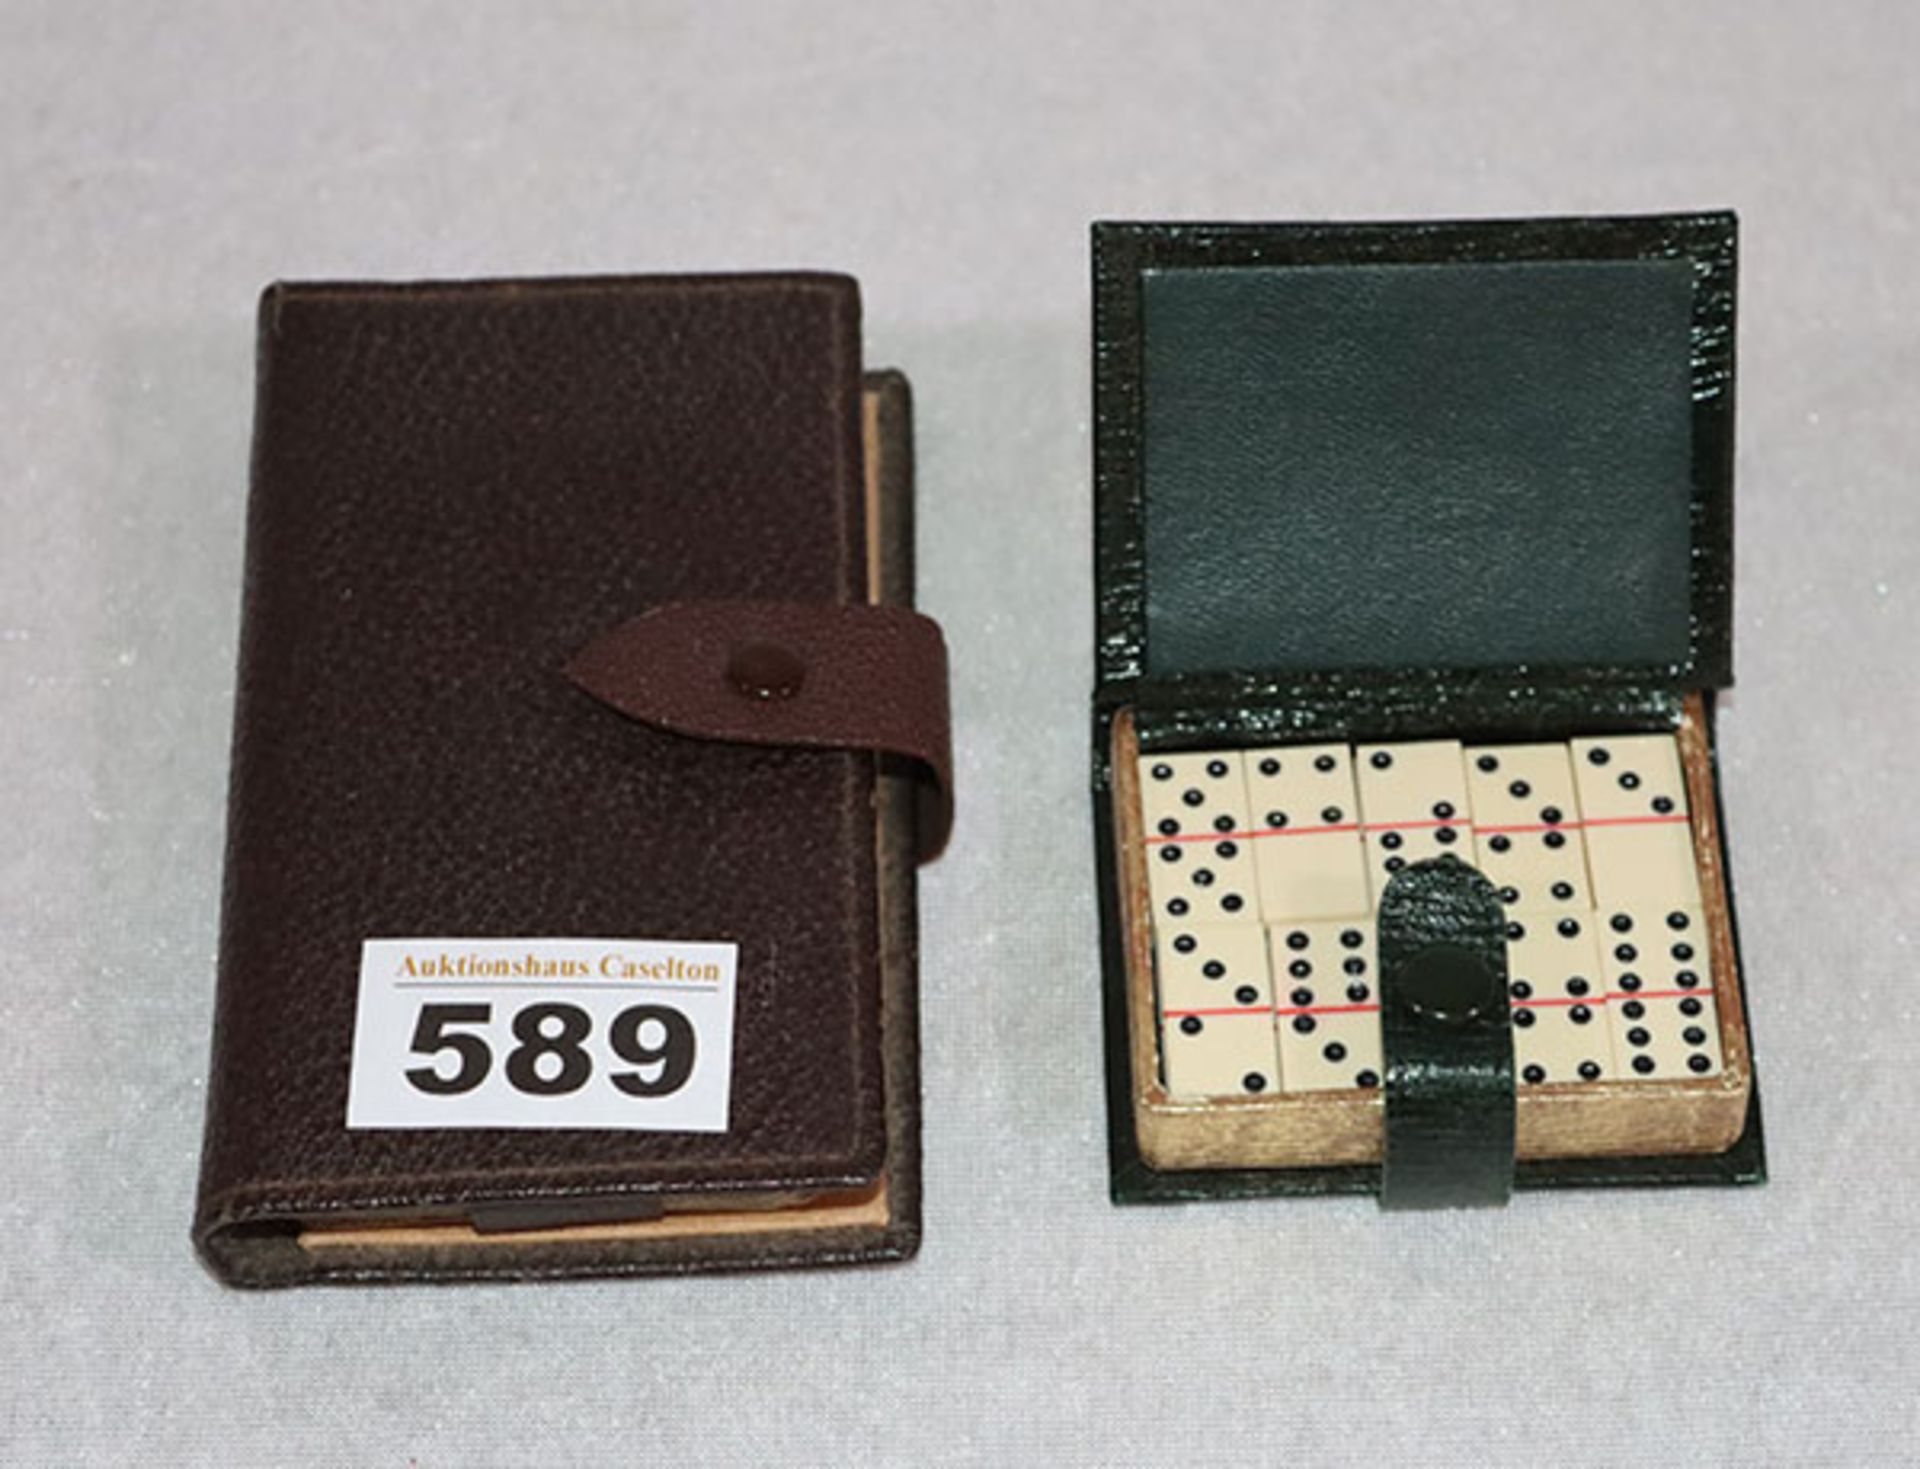 Dominospiel in Etui, 7 cm x 5,5 cm, und Schafkopf Spielkarten in Etui, 11,5 cm x 6,5 cm,